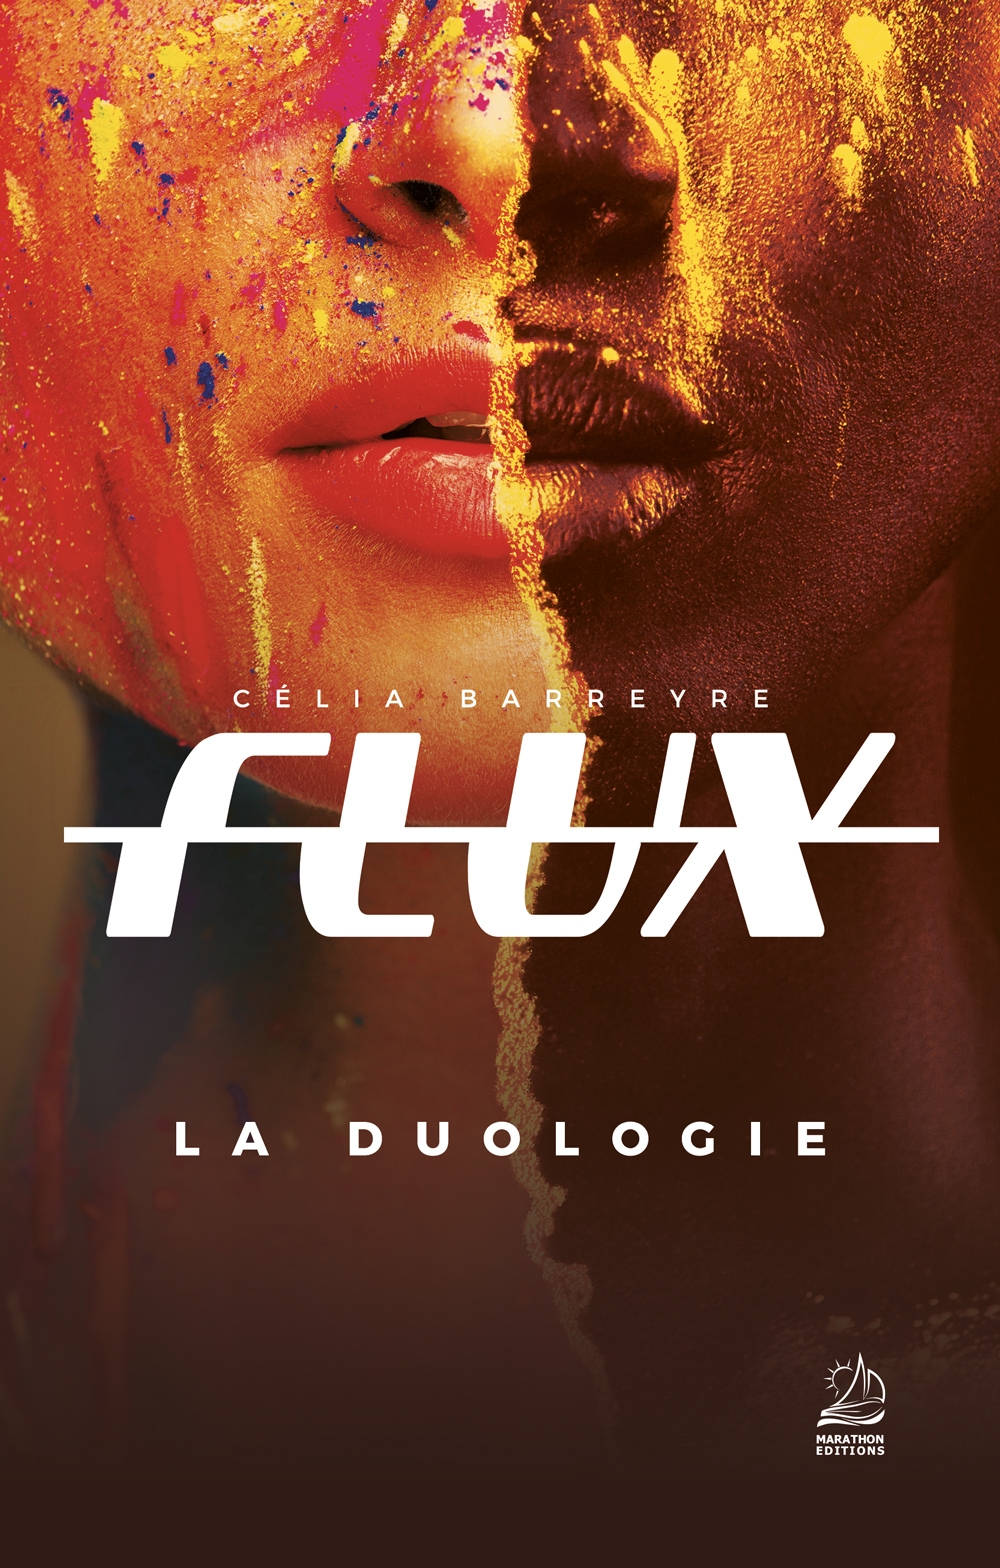 Couverture Flux, la Duologie : deux visages de jeunes filles aux masques de peintures très colorées sont scindés en deux pour ne former qu'un.